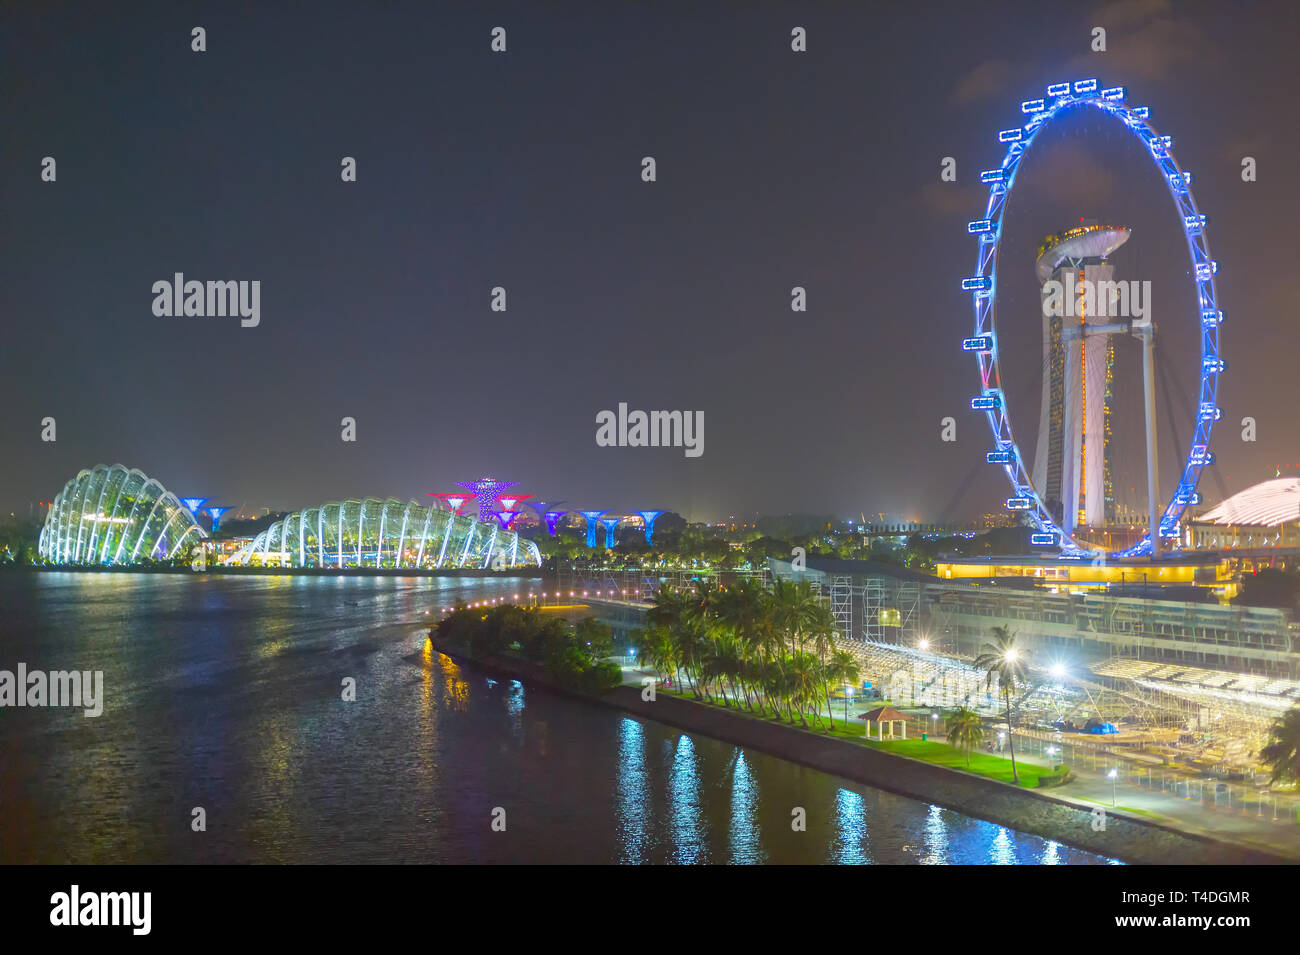 Singapur - 16. FEBRUAR 2017: die Gärten an der Bay, Marina Bay Sands, Singapur Riesenrad bei Nacht. Singapur Stockfoto